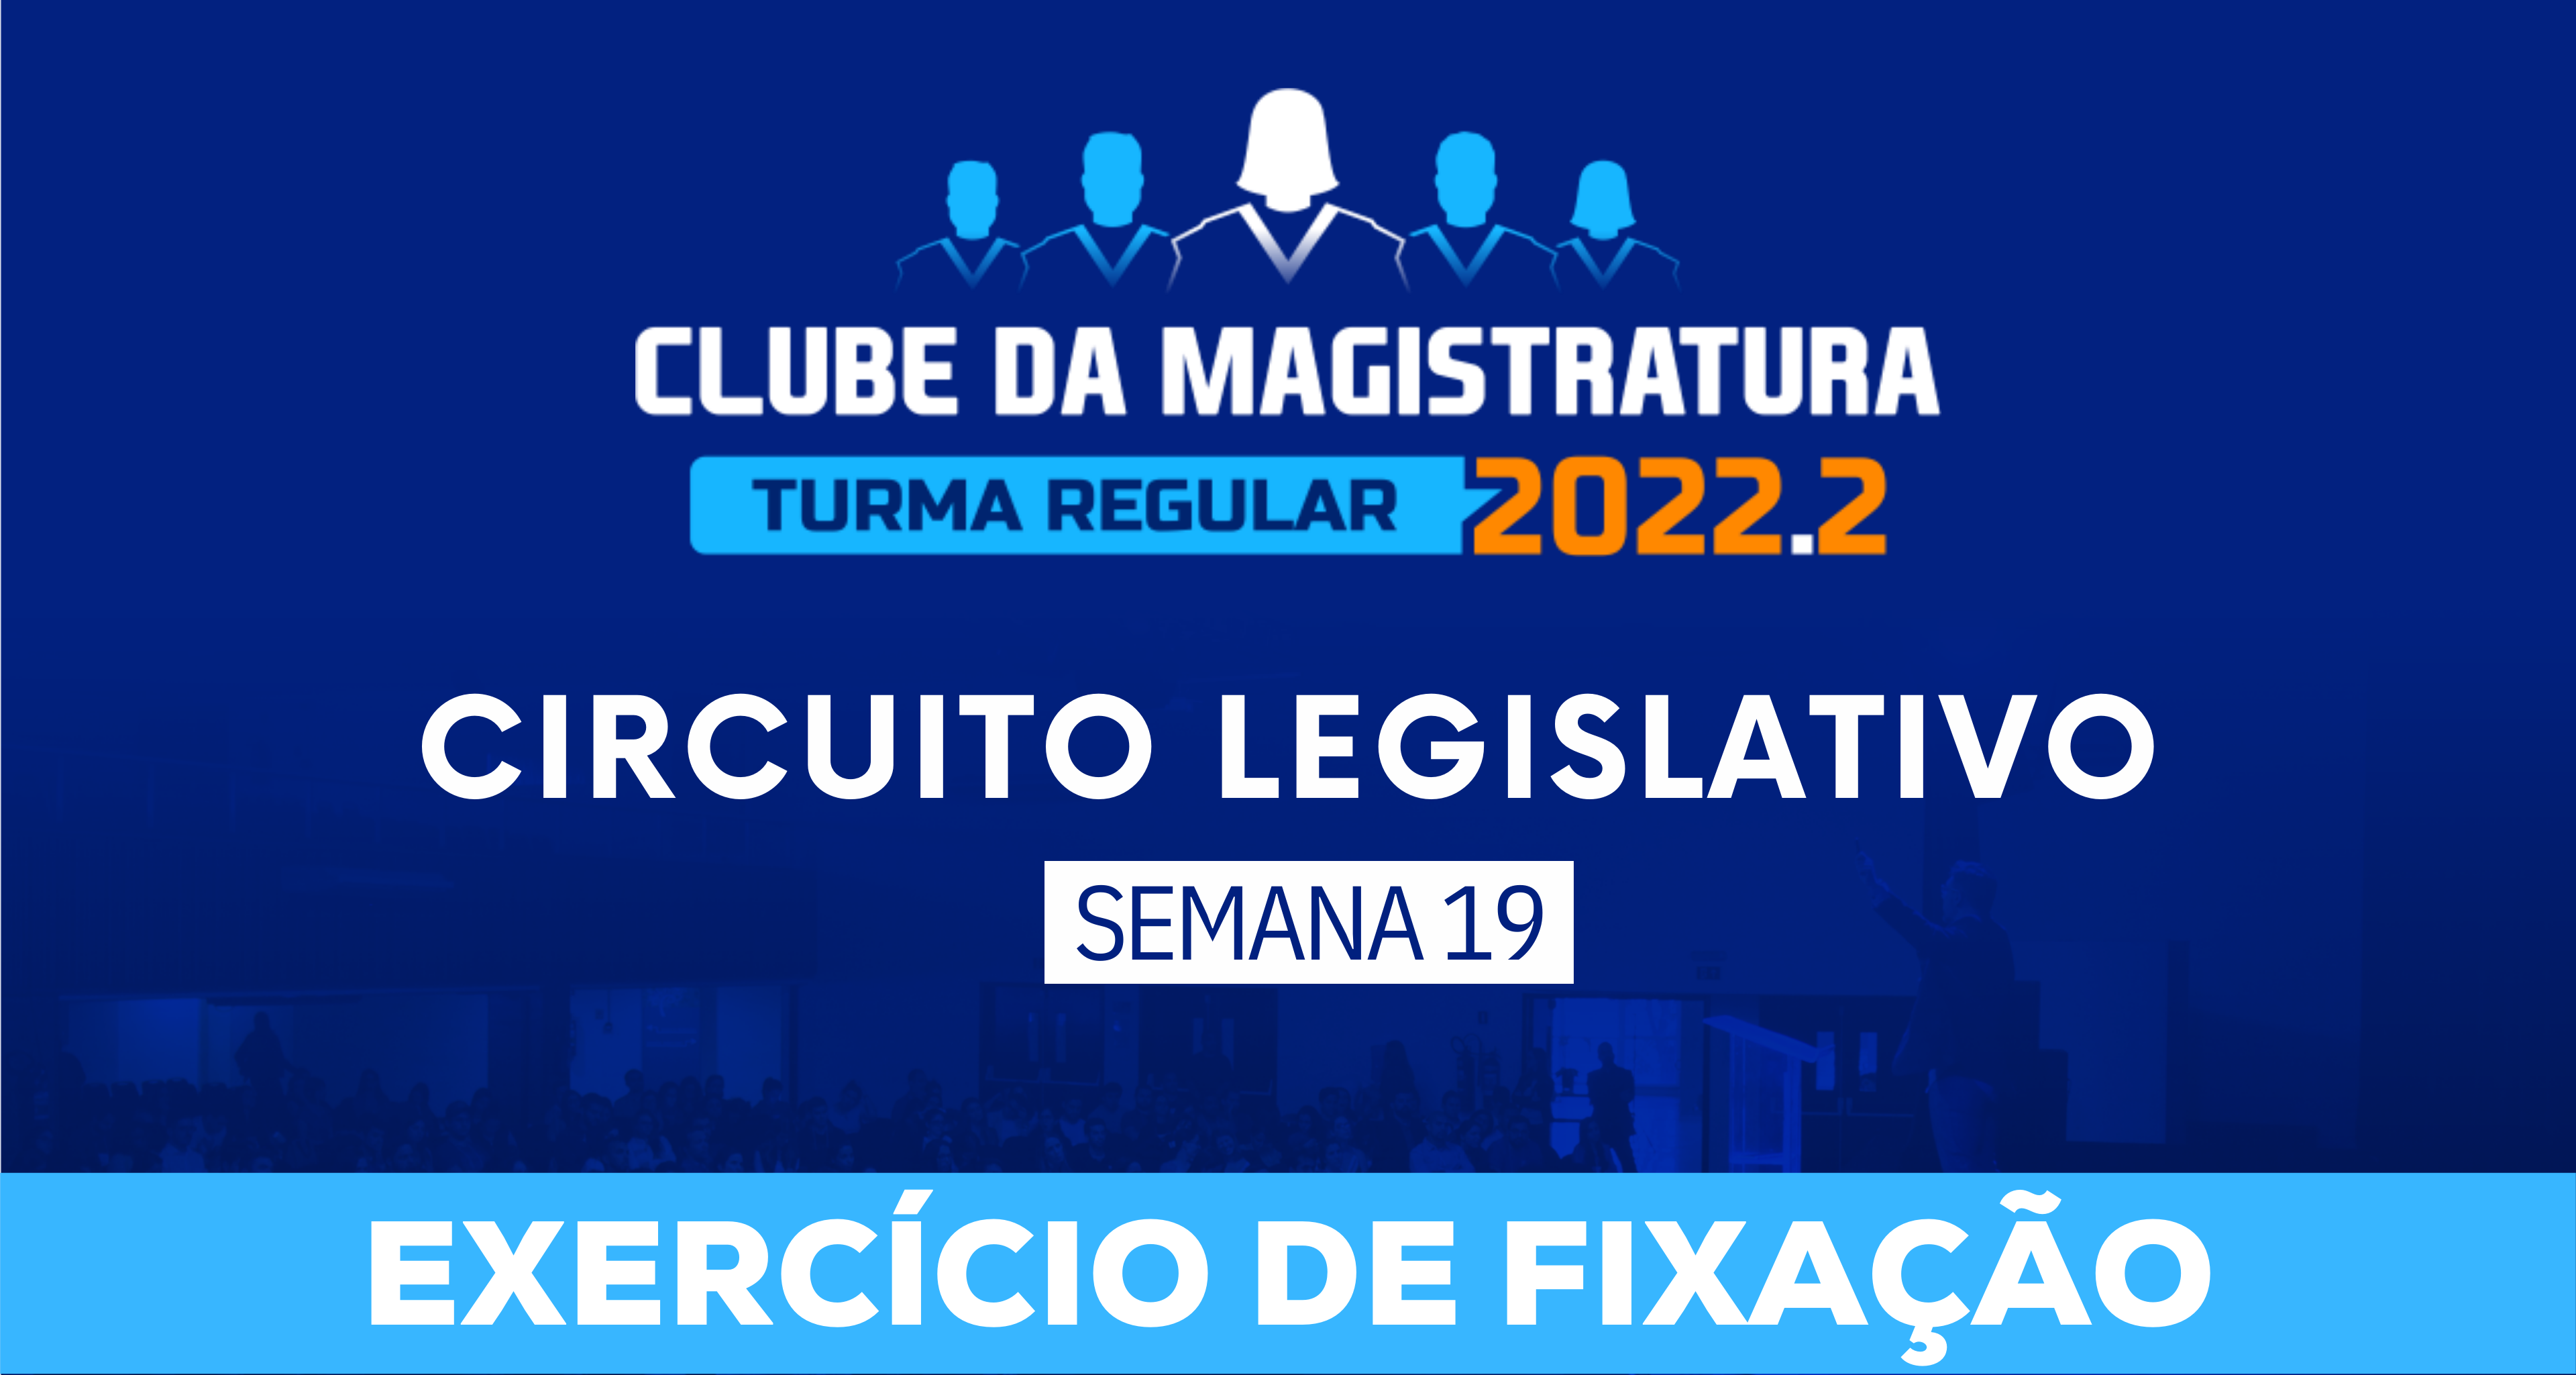 Circuito Legislativo 2022.2 (Clube da Magistratura - Semana 19)